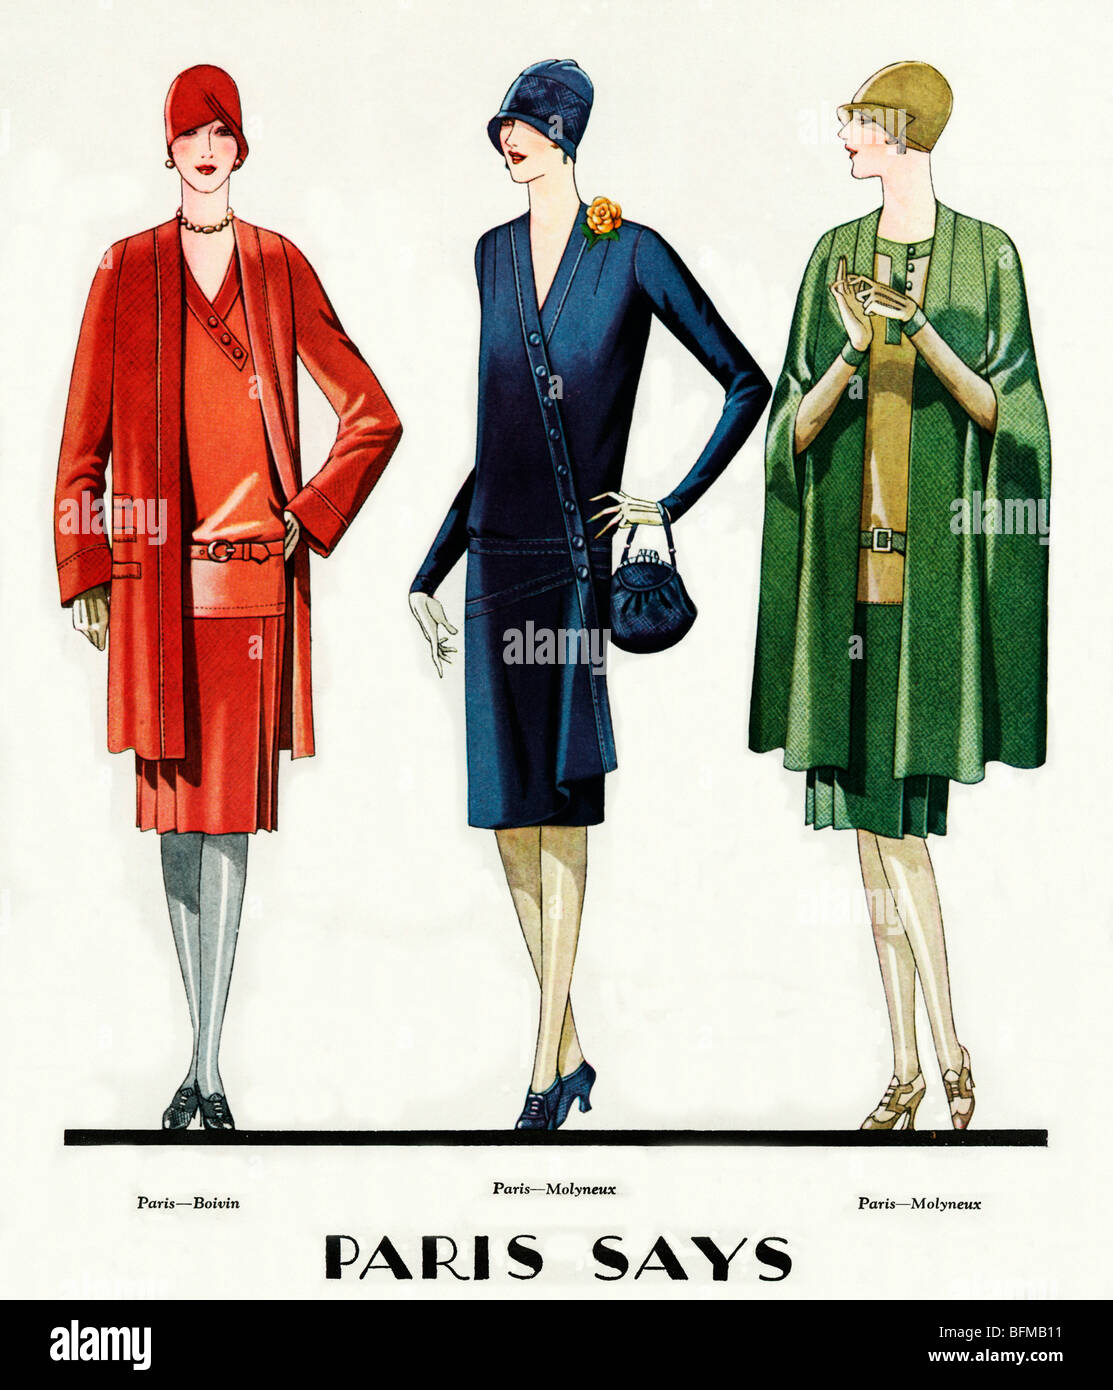 Paris, février 1928 Mode magazine américain illustration de la Paris spring fashions de Molyneux et Belvin Banque D'Images